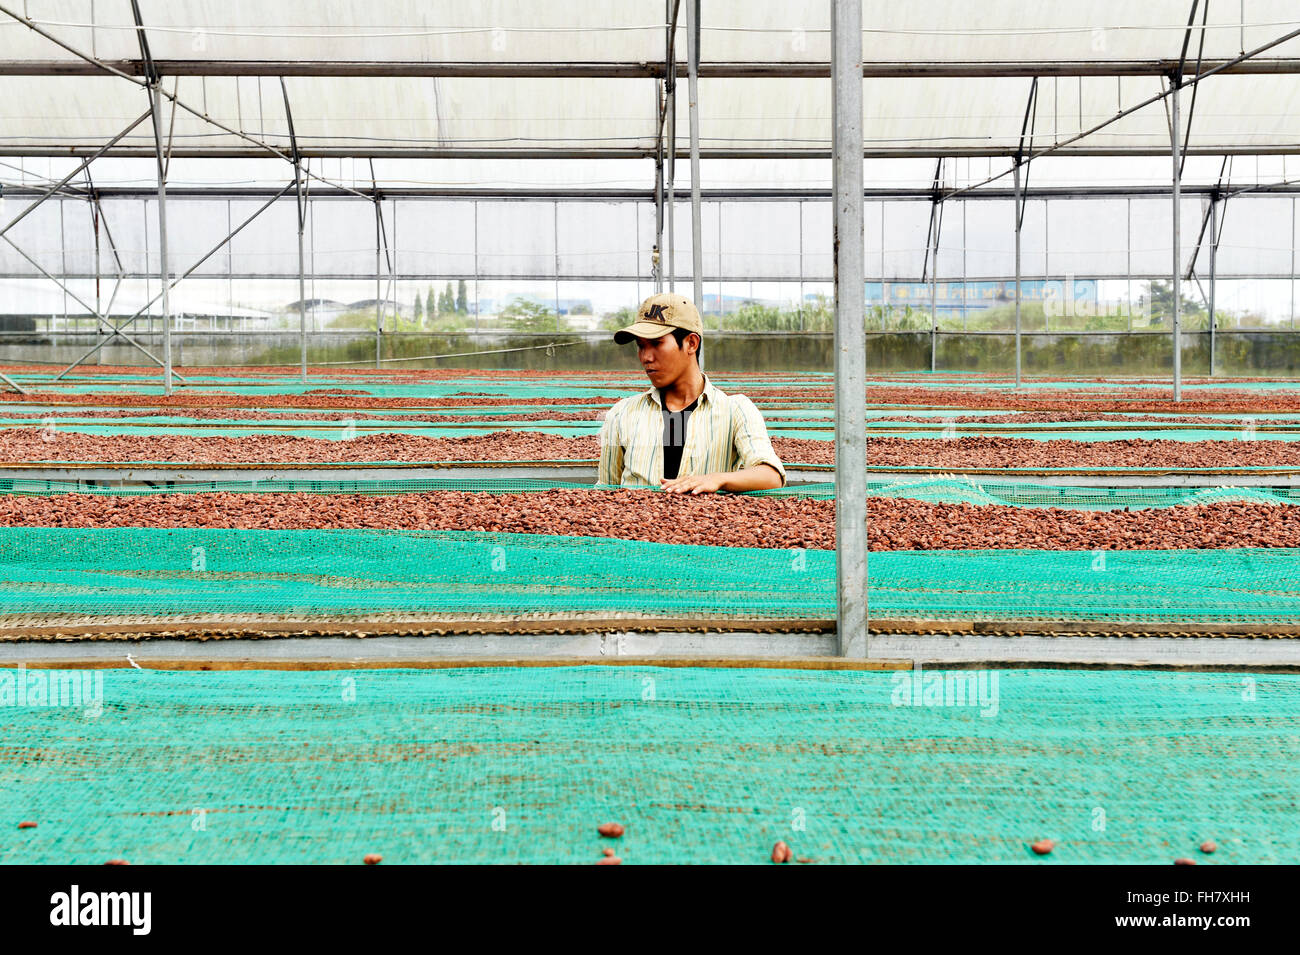 Cocoa farming in Ben Tre province, Vietnam Stock Photo